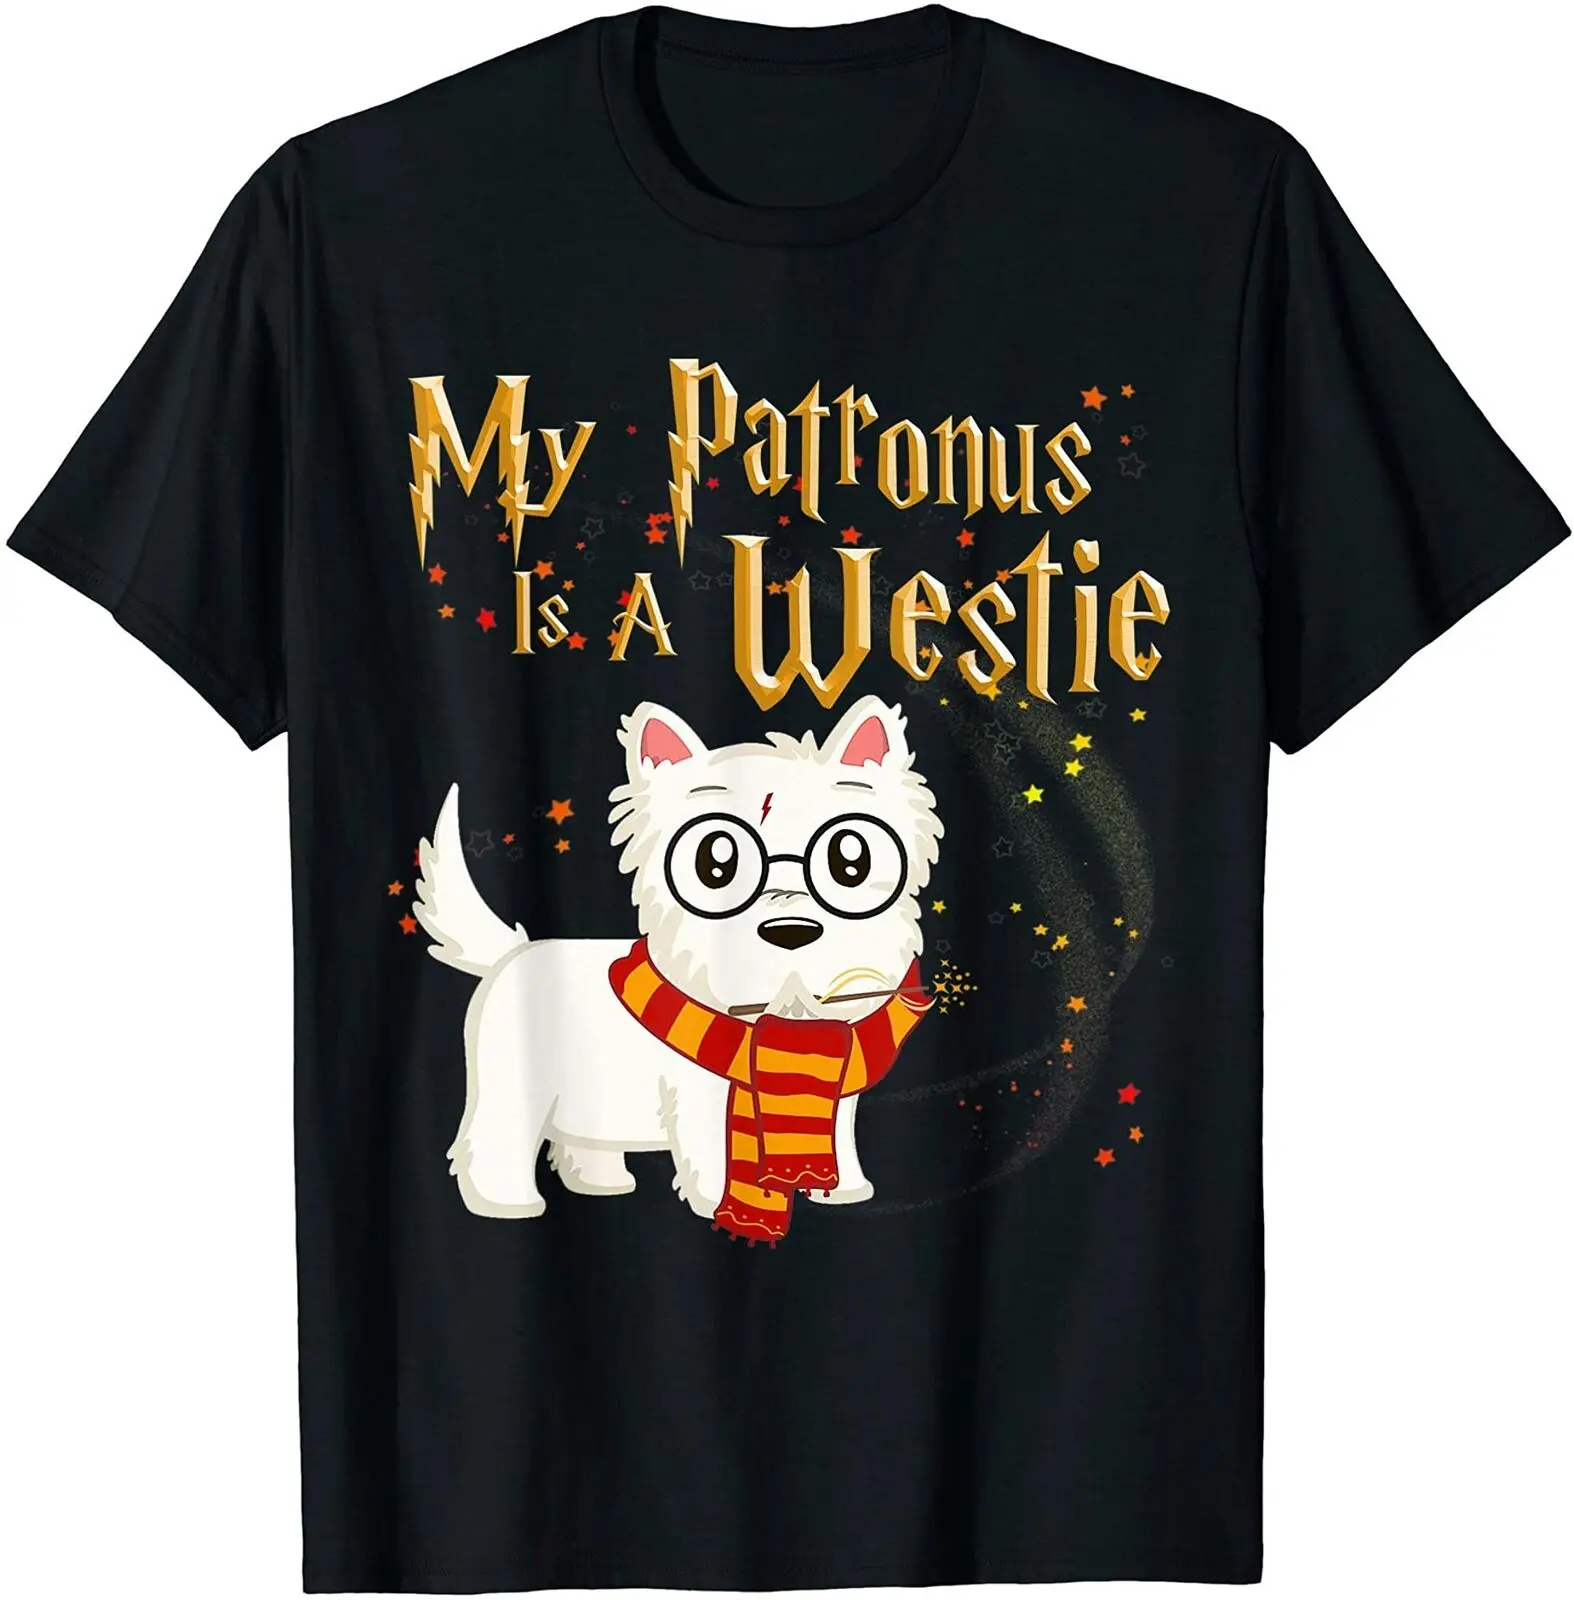 Il mio Patronus è un Westie. T-Shirt da uomo regalo di natale amante dei cani divertente. Estate cotone manica corta o-collo Unisex T Shirt nuovo S-3XL